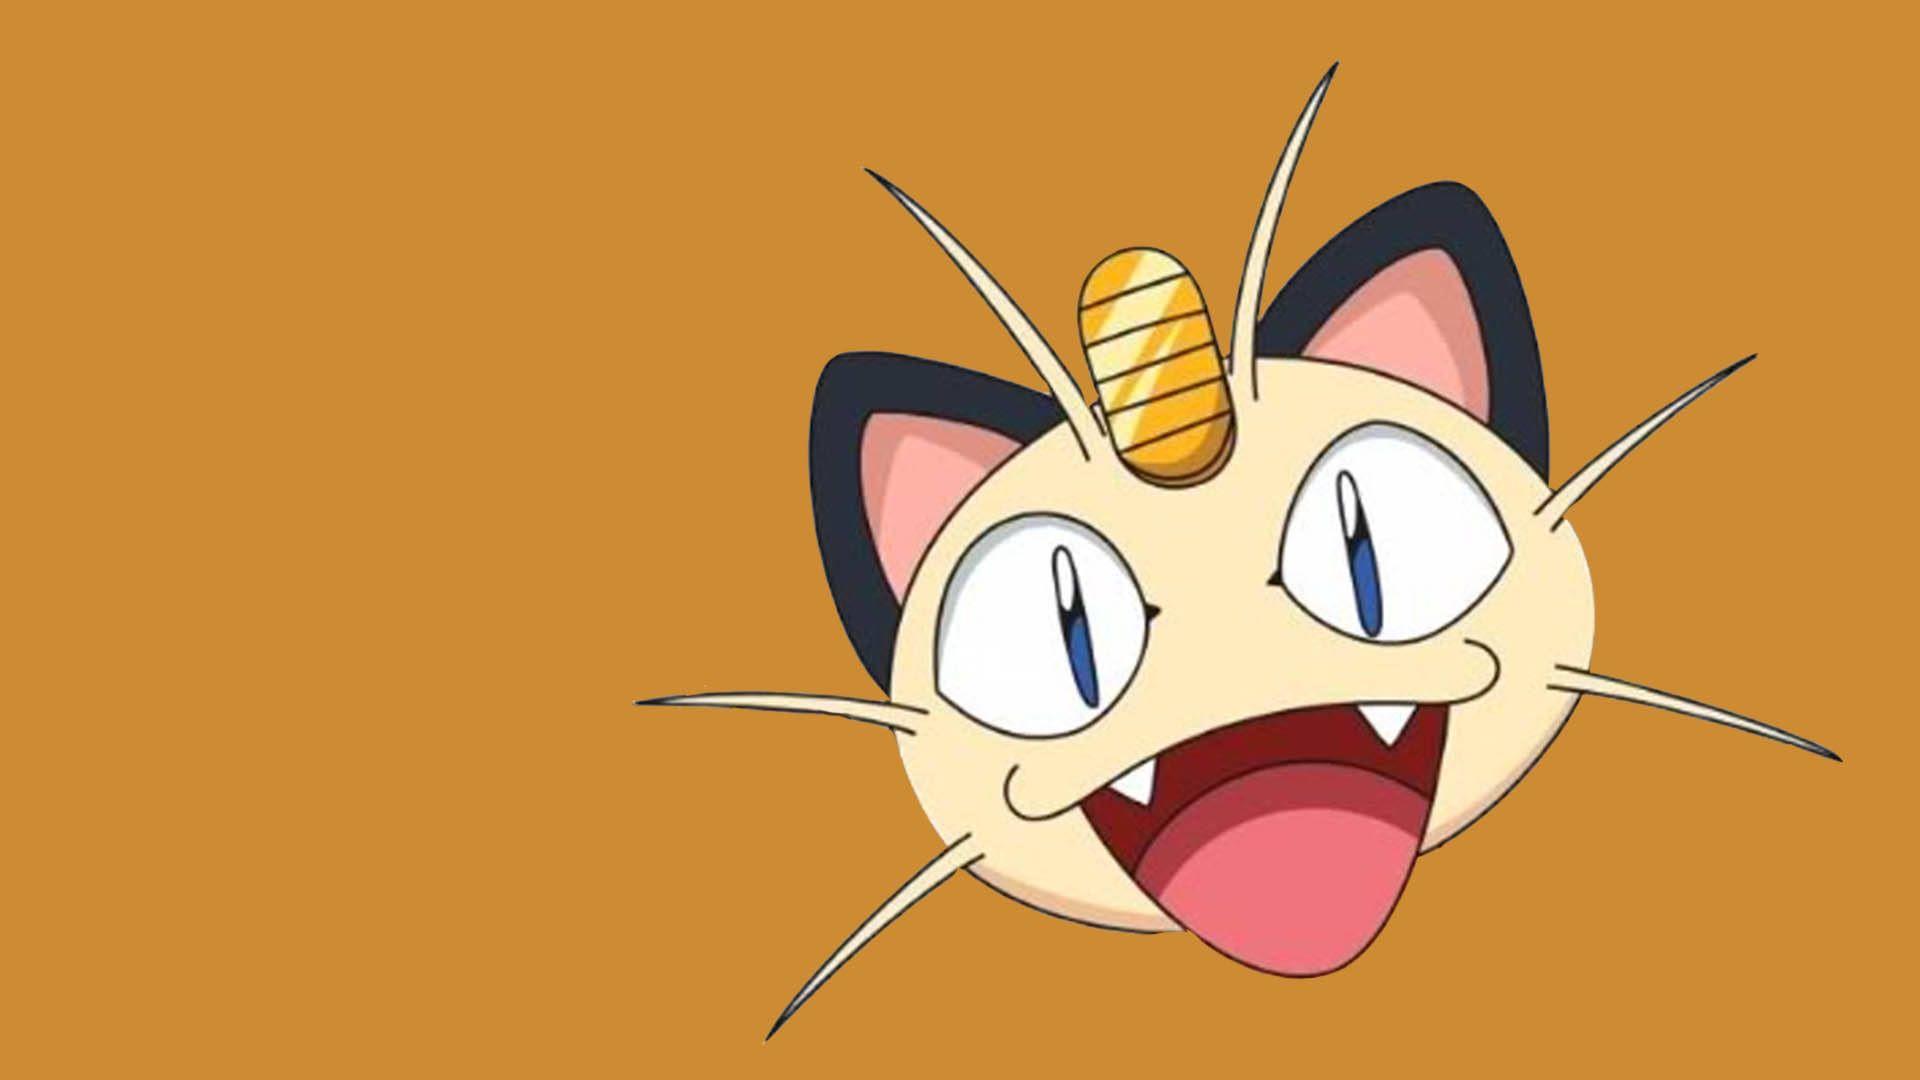 Pokemon Meowth Wallpaper Image